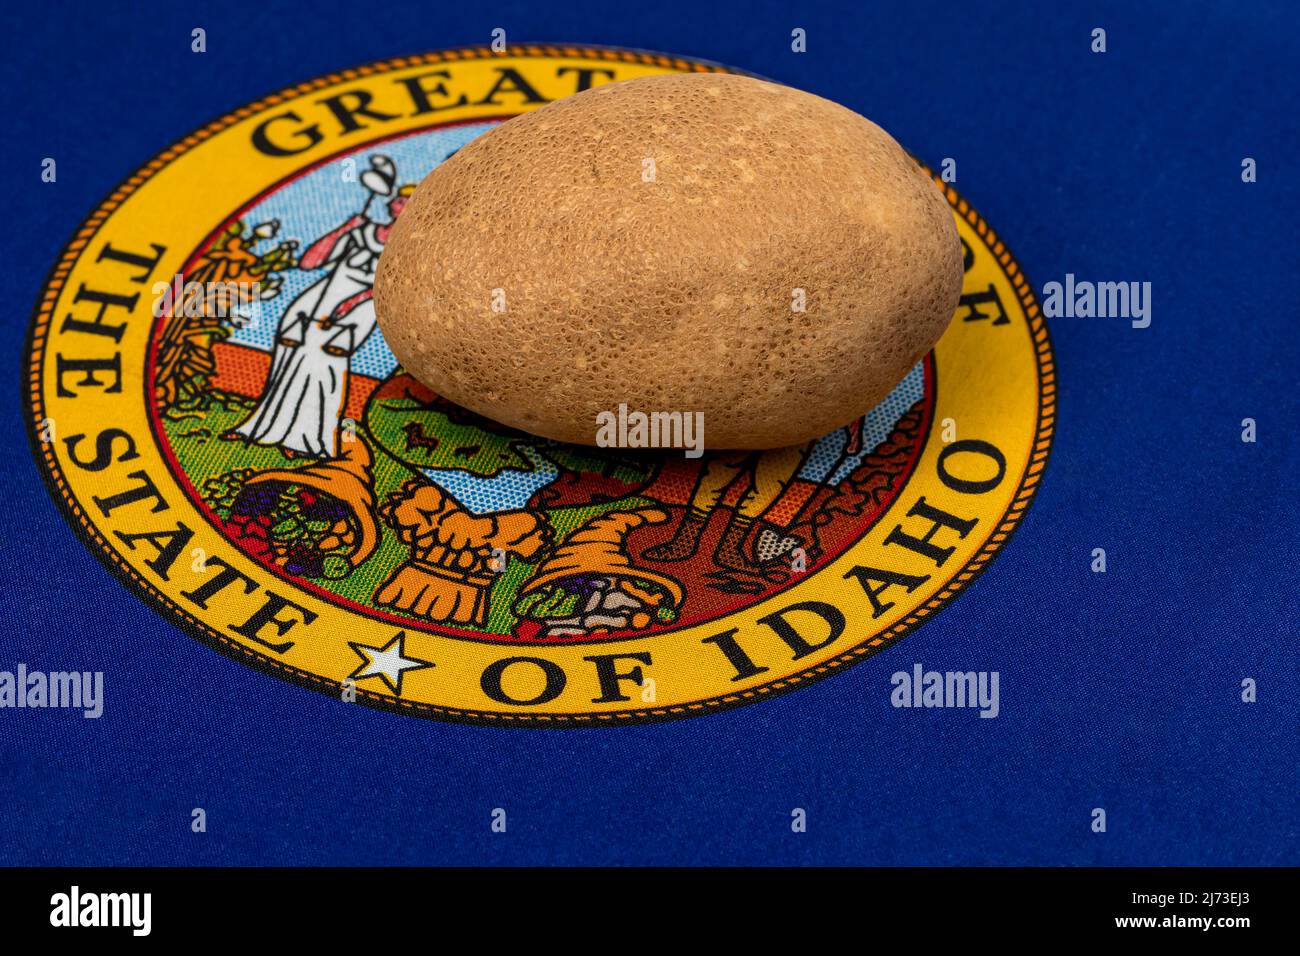 Bandera del estado de Idaho y patatas russet. Concepto de producción, comercio y exportación de papa. Foto de stock